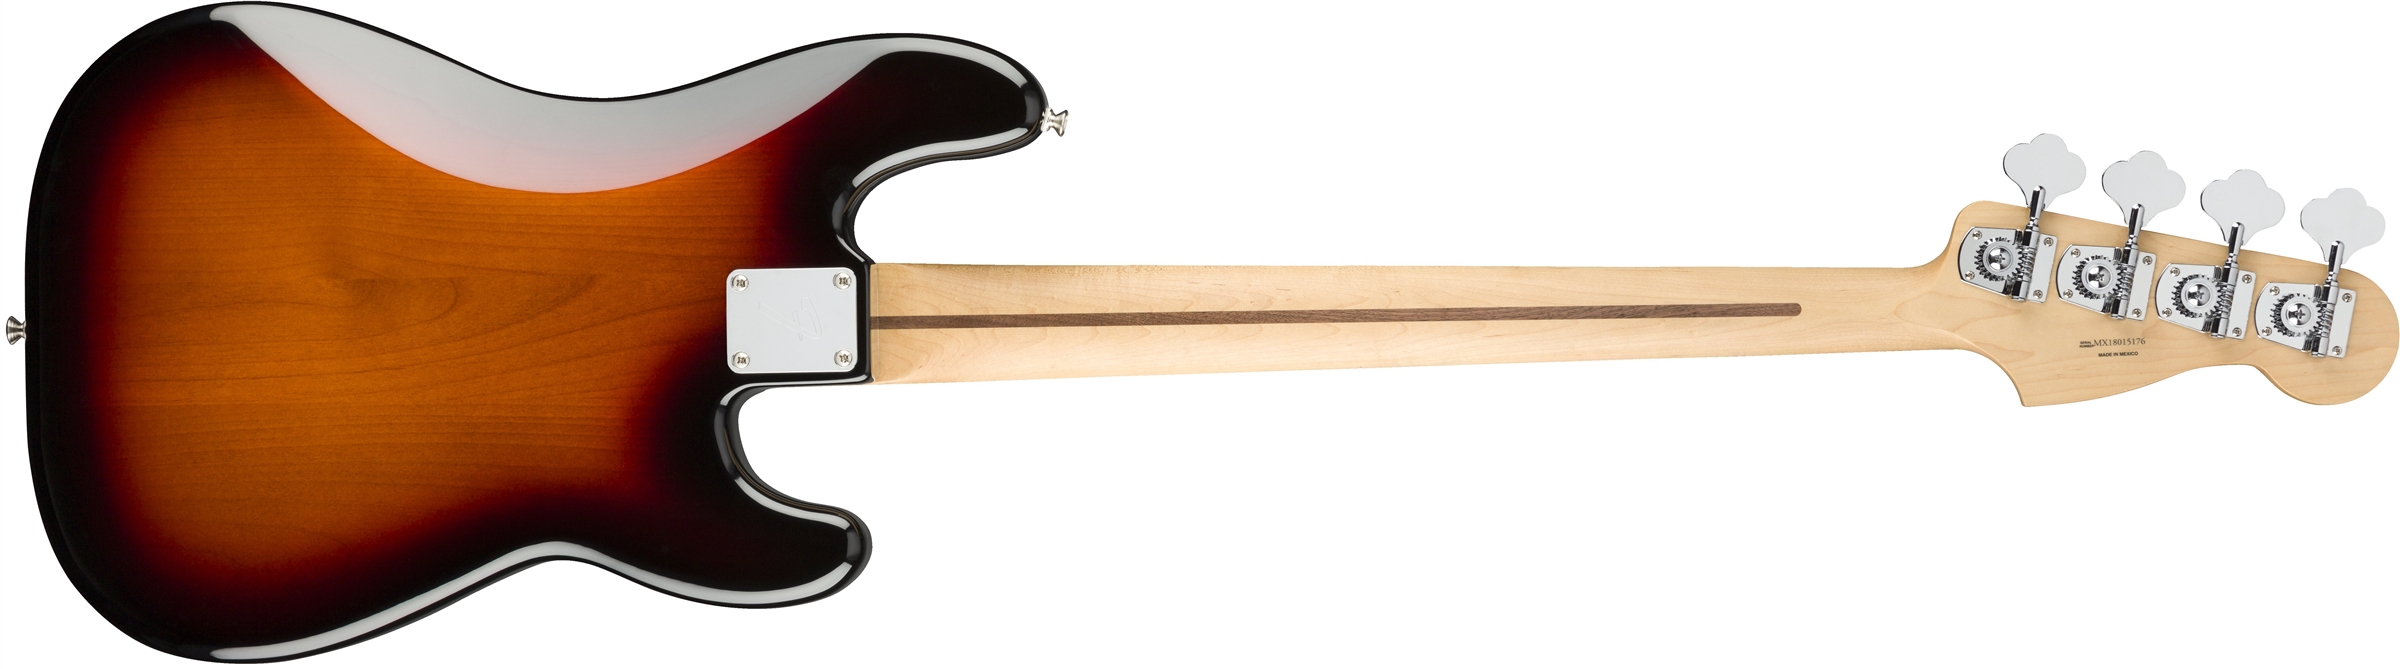 Fender Precision Bass Player Lh Gaucher Mex Pf - 3-color Sunburst - Solid body elektrische bas - Variation 1